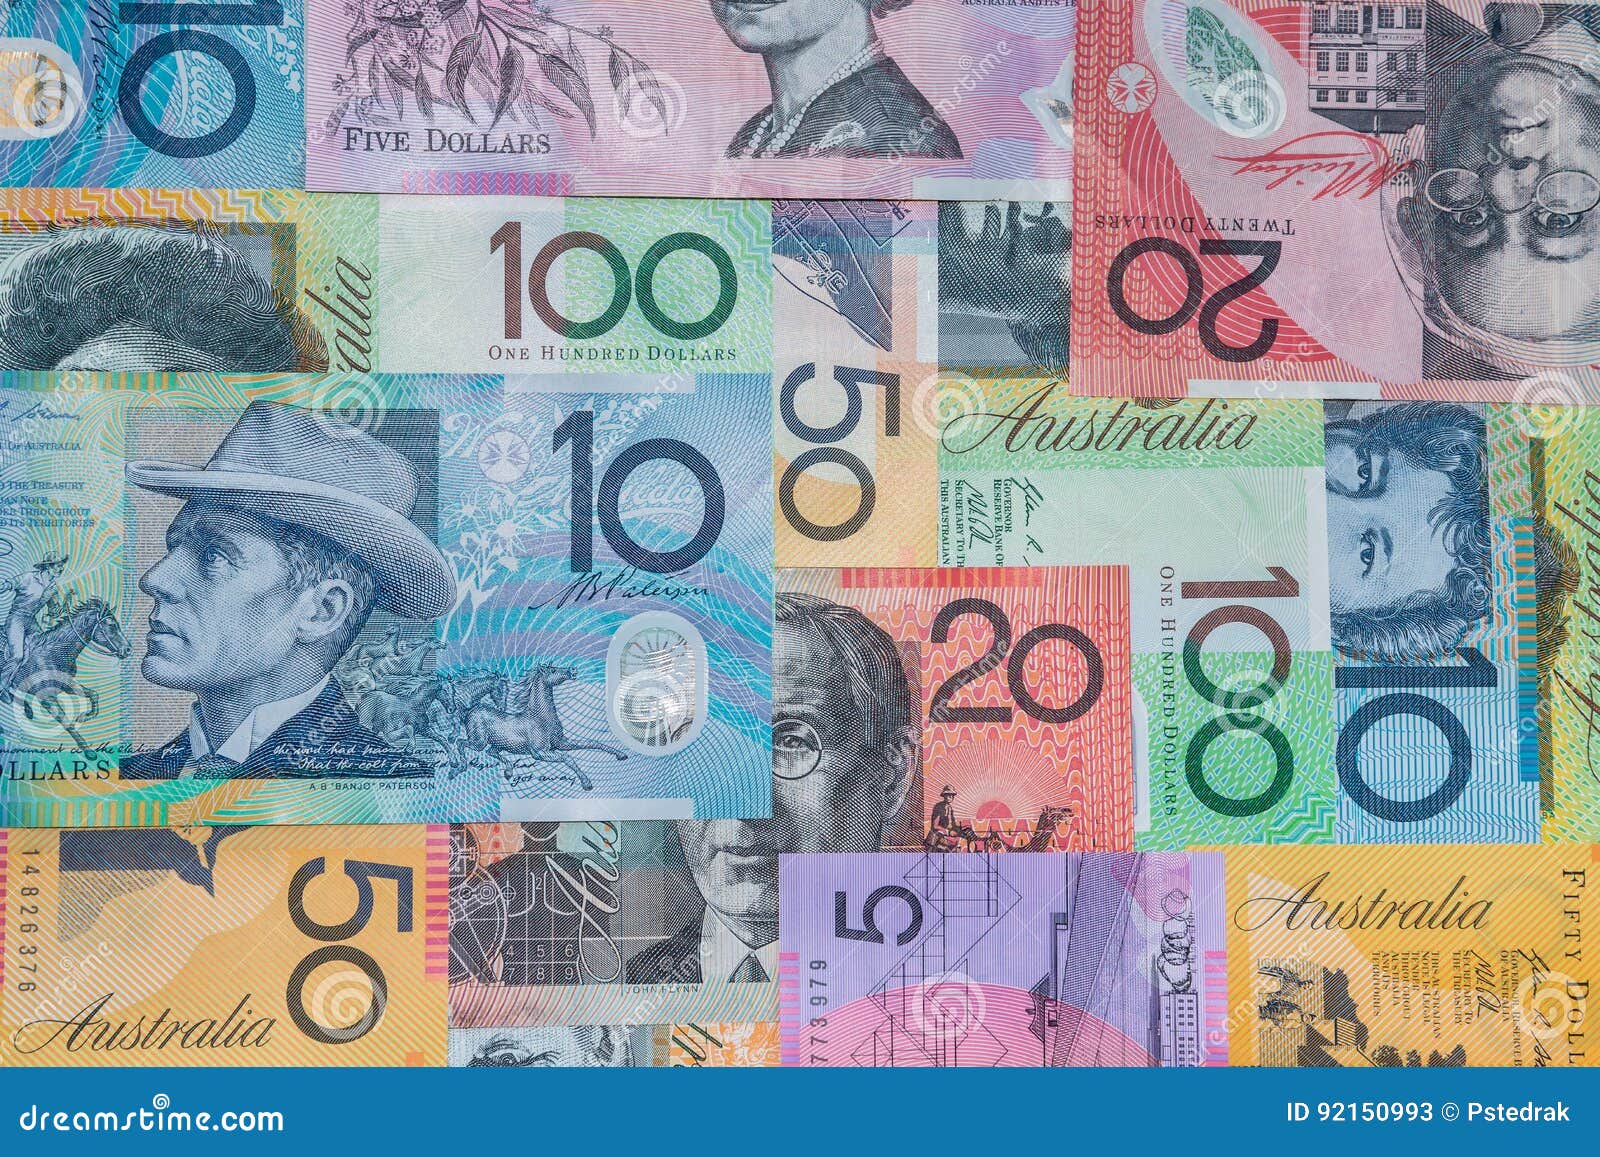 澳大利亚人一百元钞票和五十美金 库存图片. 图片 包括有 时运, 附注, 商业, 市场, 澳大利亚, 资金 - 68316101